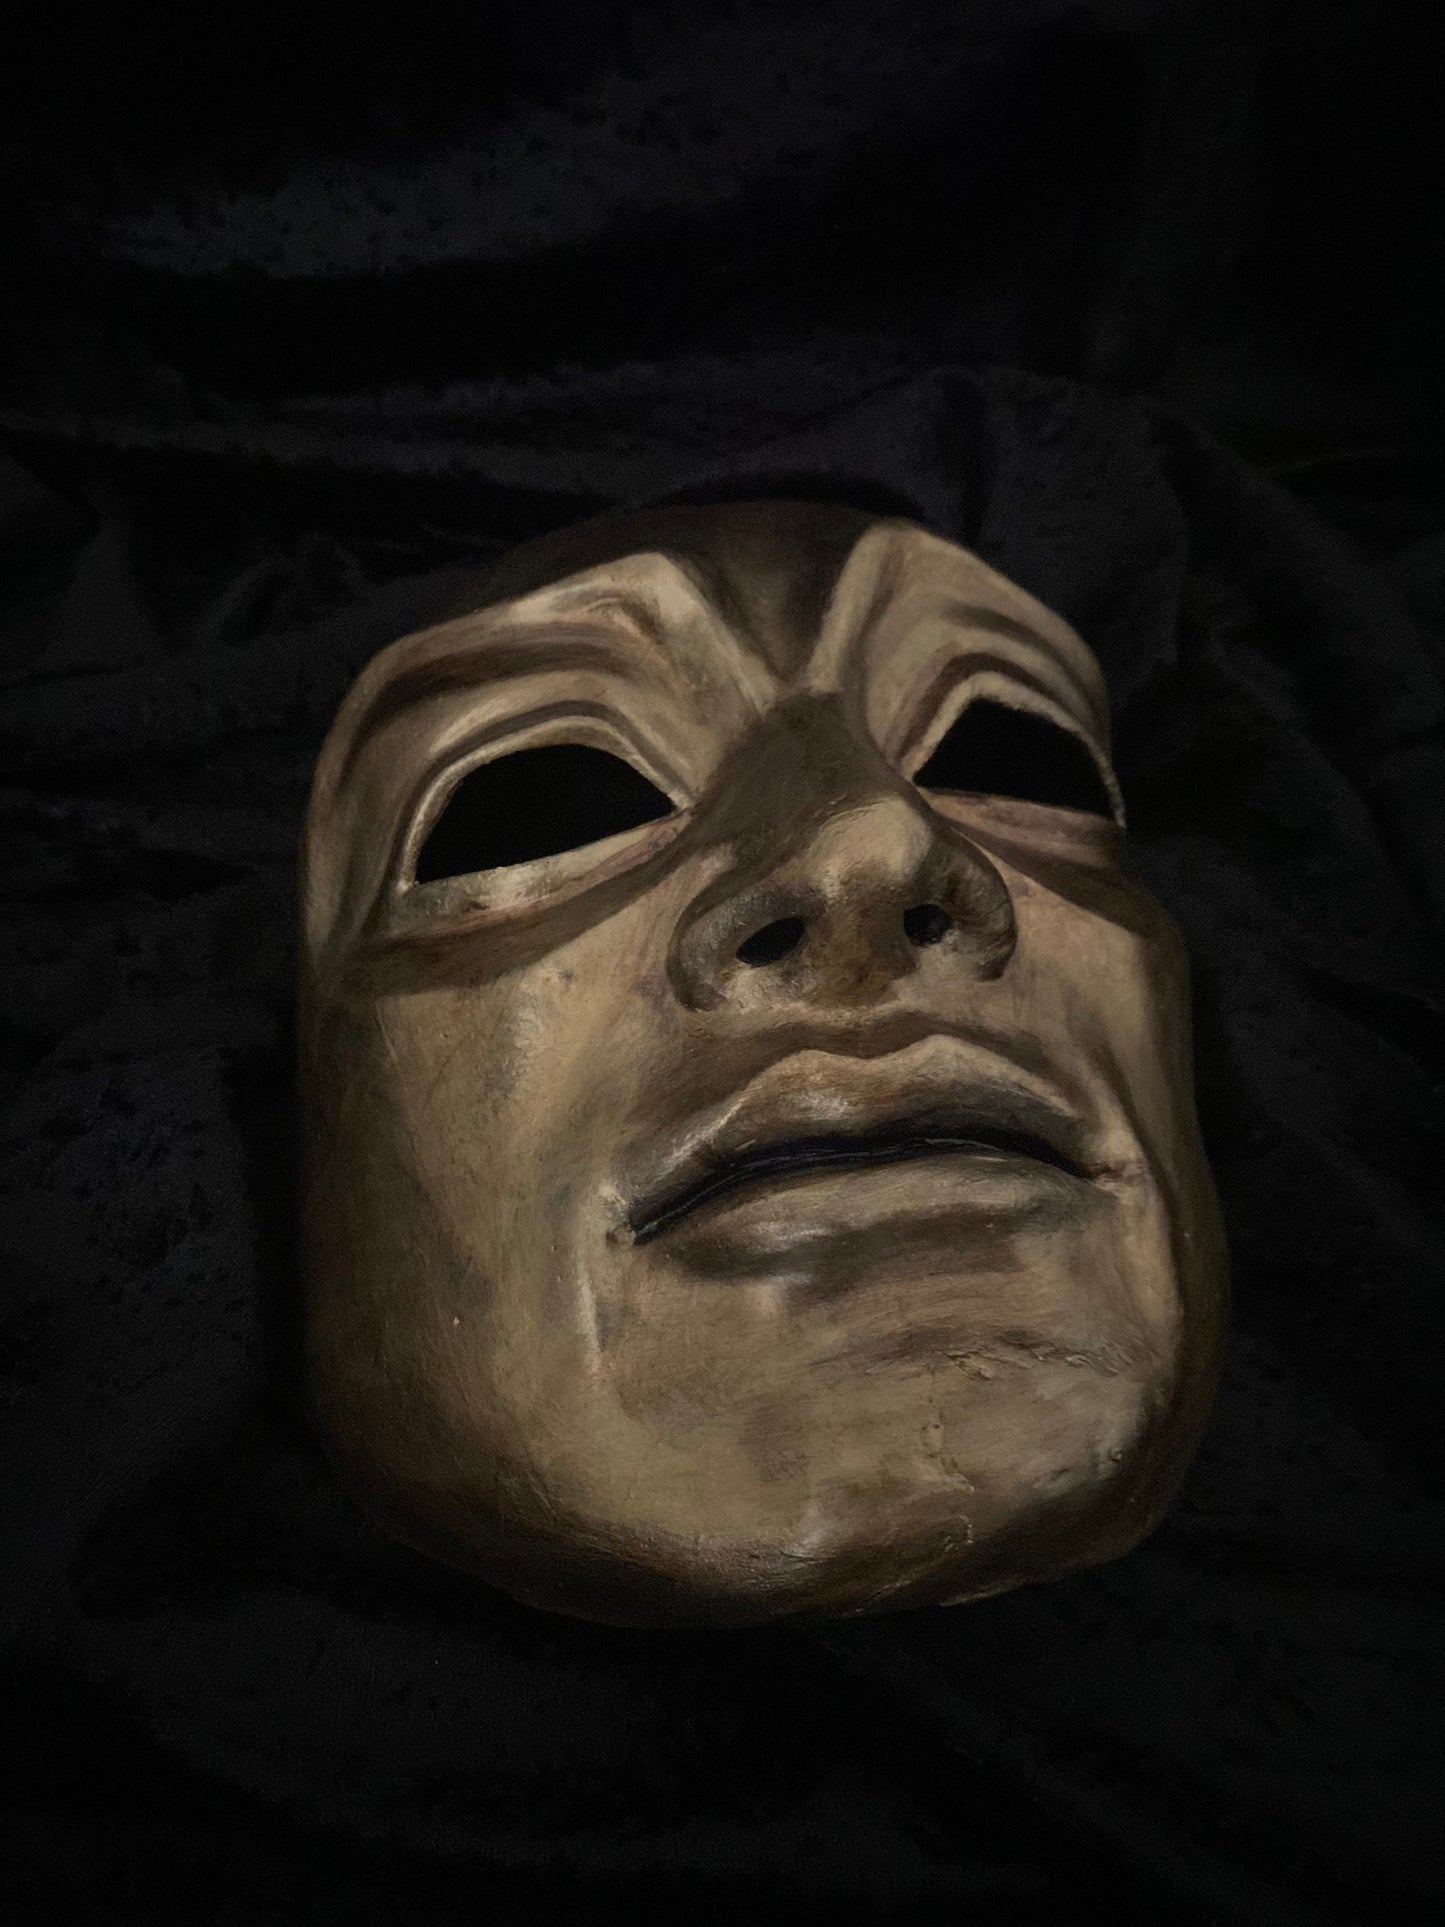 EDICIÓN LIMITADA Maestro de la orgia Máscaras venecianas Tienda Carnaval en Venecia con pan de oro Carnaval al estilo italiano Mardi gras